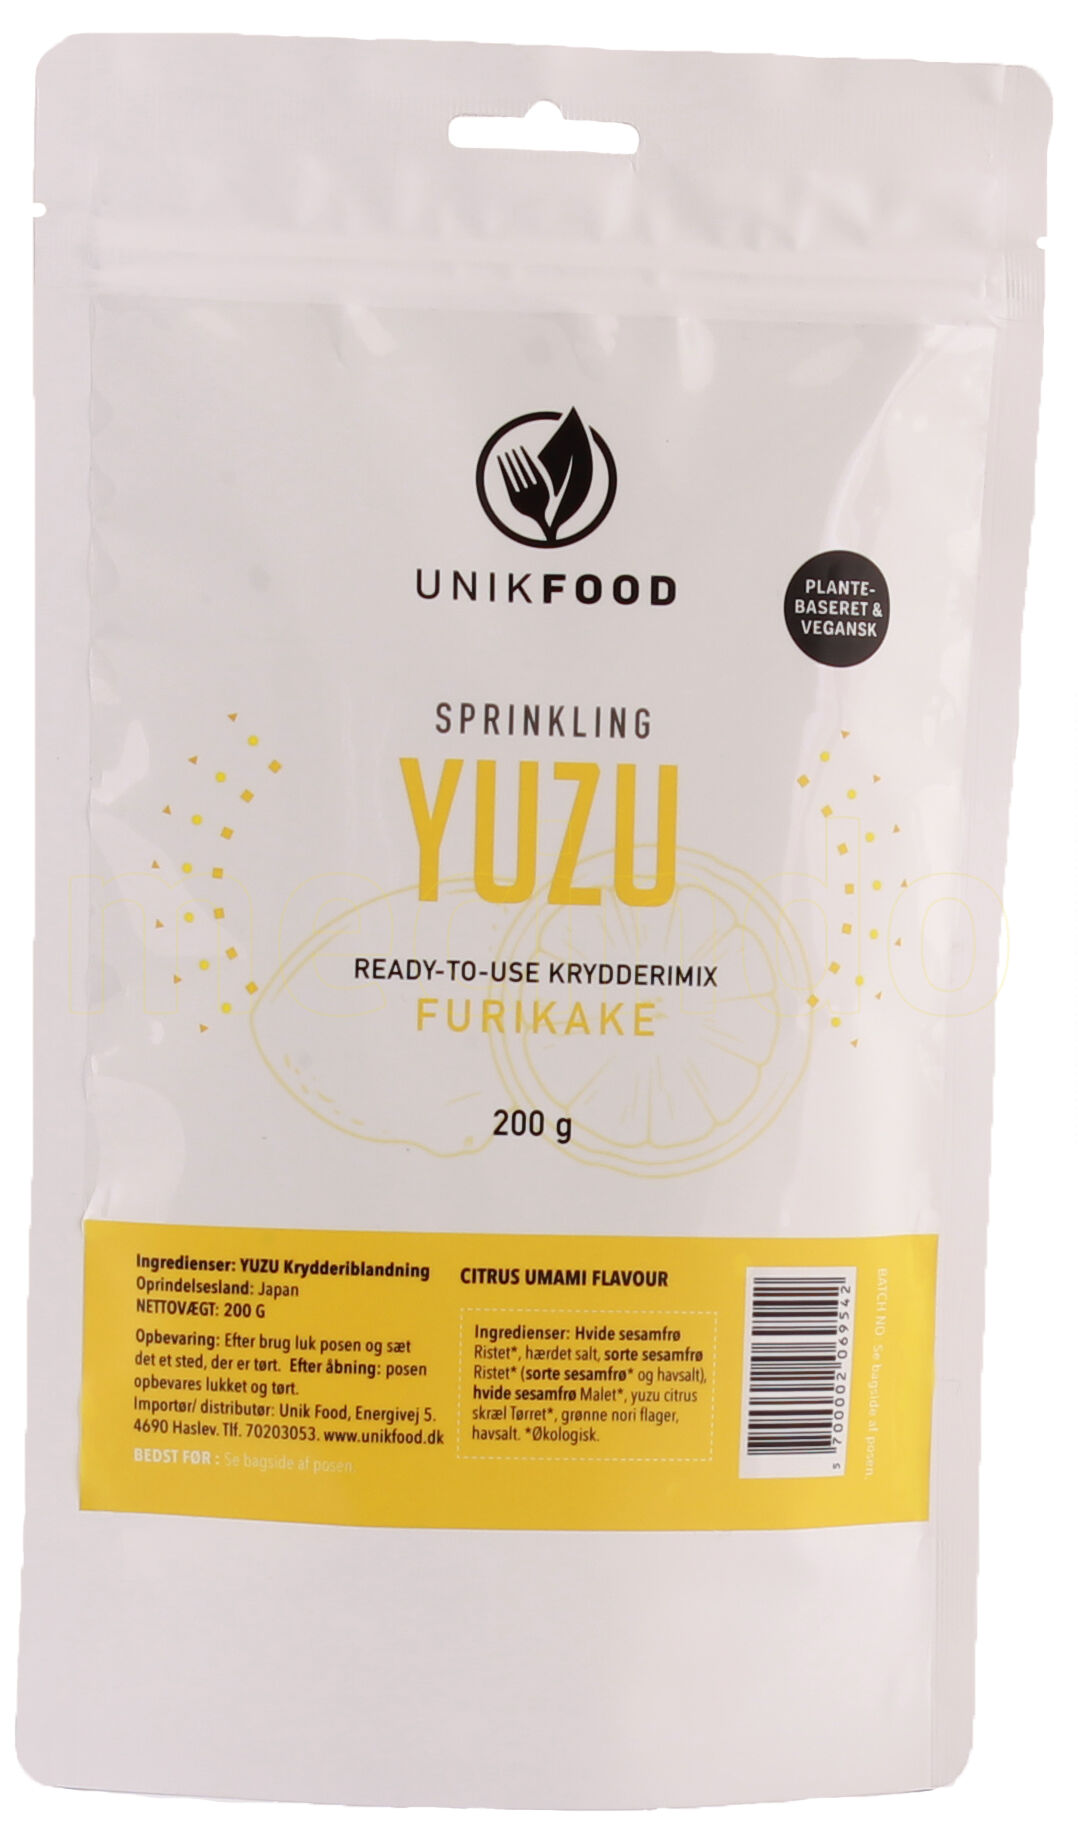 Unik Food UnikFood Furikake Yuzu Krydderimix - 200 g